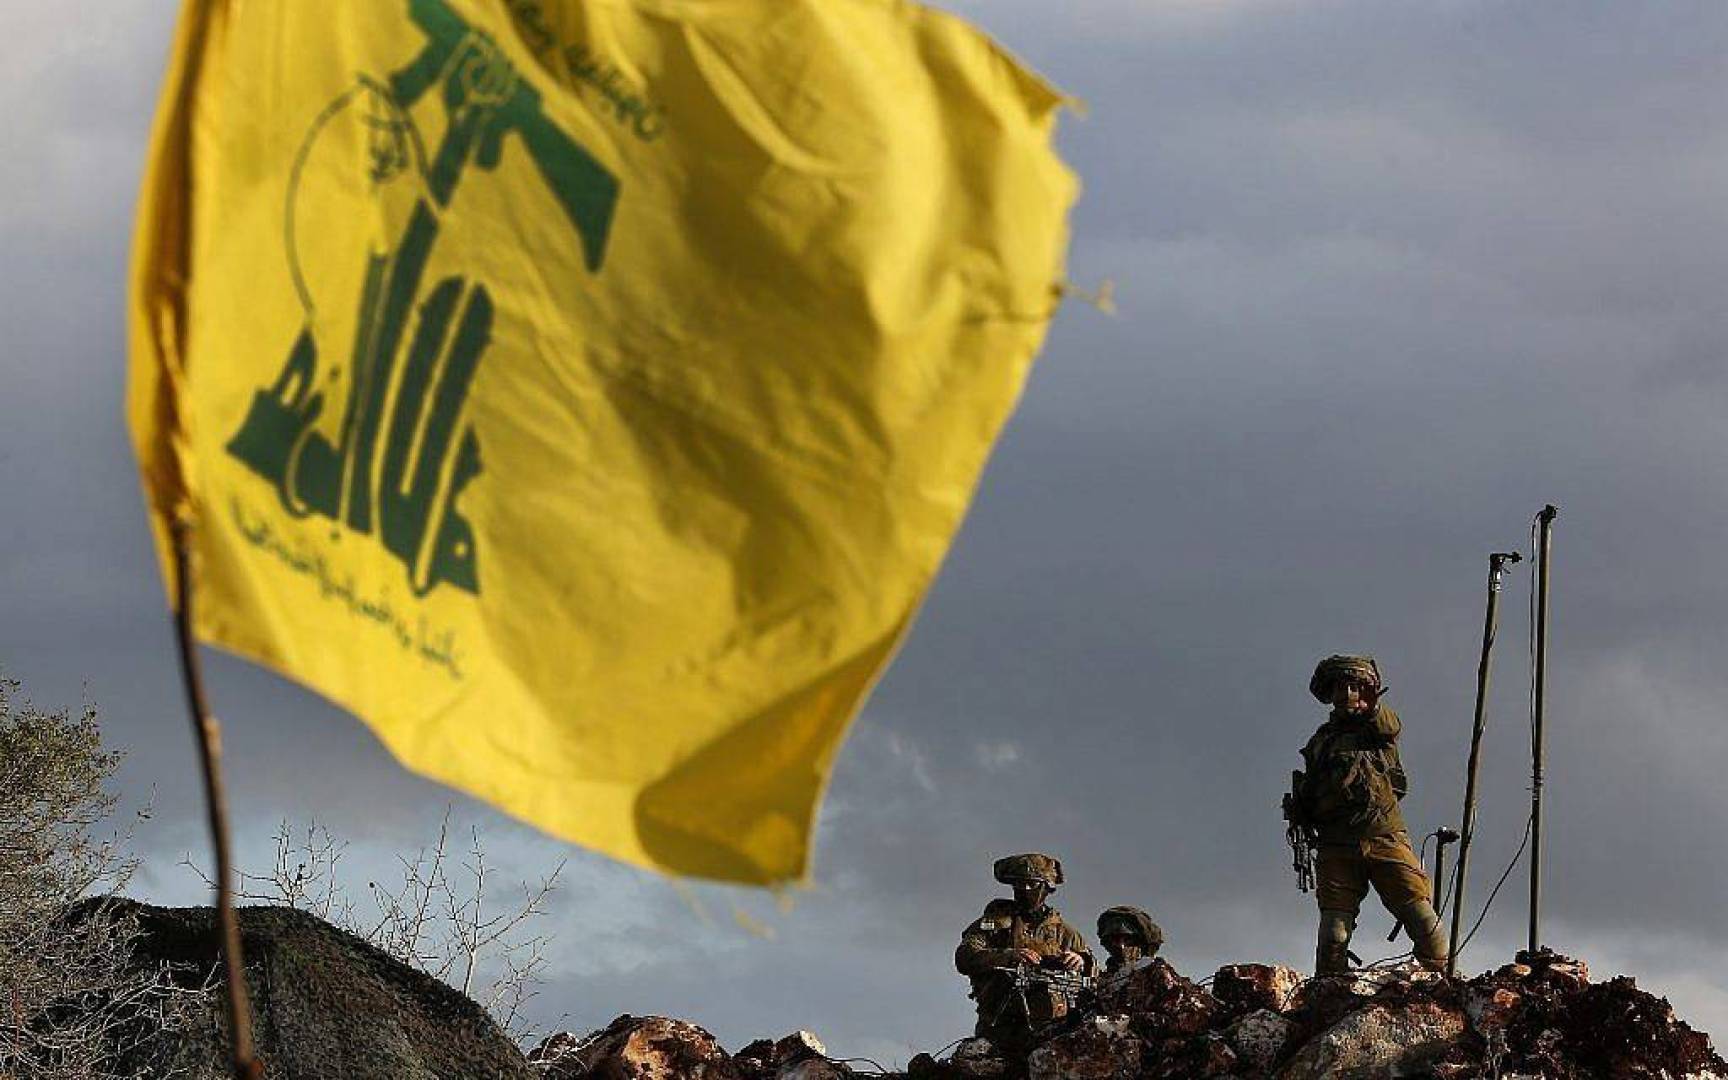 لعلاقات الإعلامية في حزب الله بيانأتدين فيه إستهداف عدد من الإعلاميين على الحدود اللبنانية مع فلسطين المحتلة